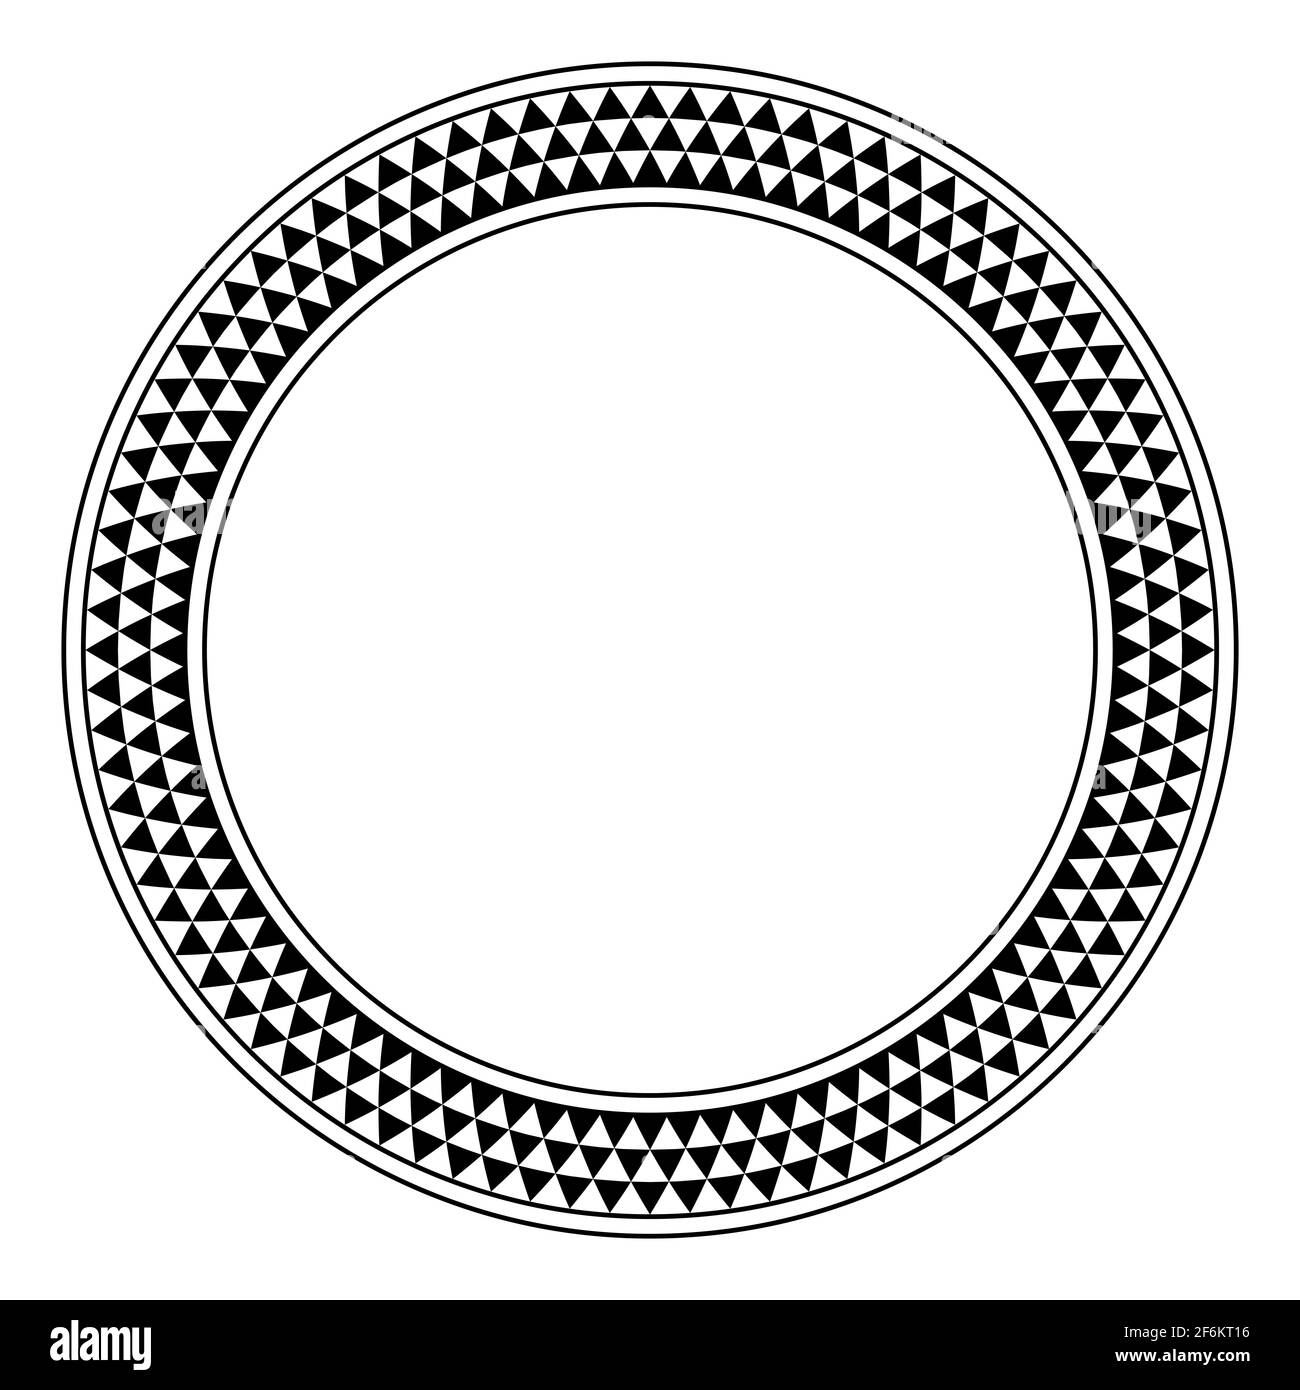 Dreieck kariertes Muster Kreis Rahmen. Runder Rand mit gezacktem Muster, bestehend aus drei Reihen von schwarz-weißen abwechselnd Dreiecken. Stockfoto